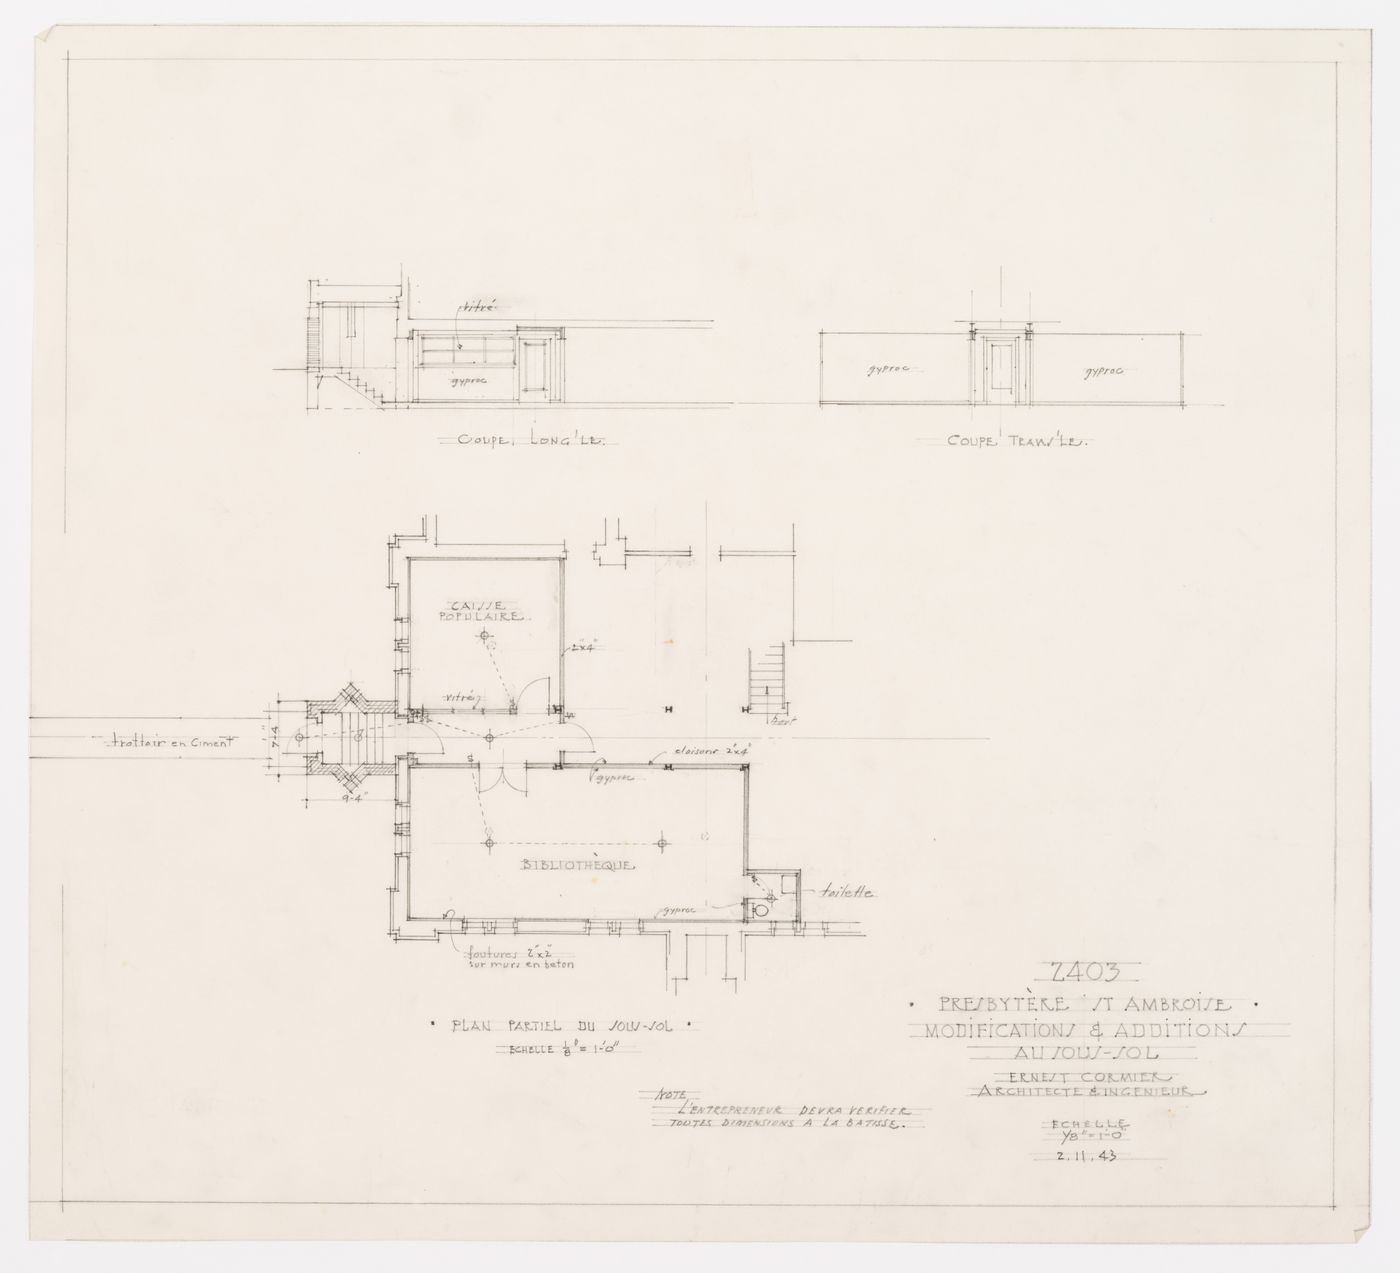 Plan des changements du sous-sol, Presbytère Saint-Ambroise, Montréal, Canada (1926-1929)